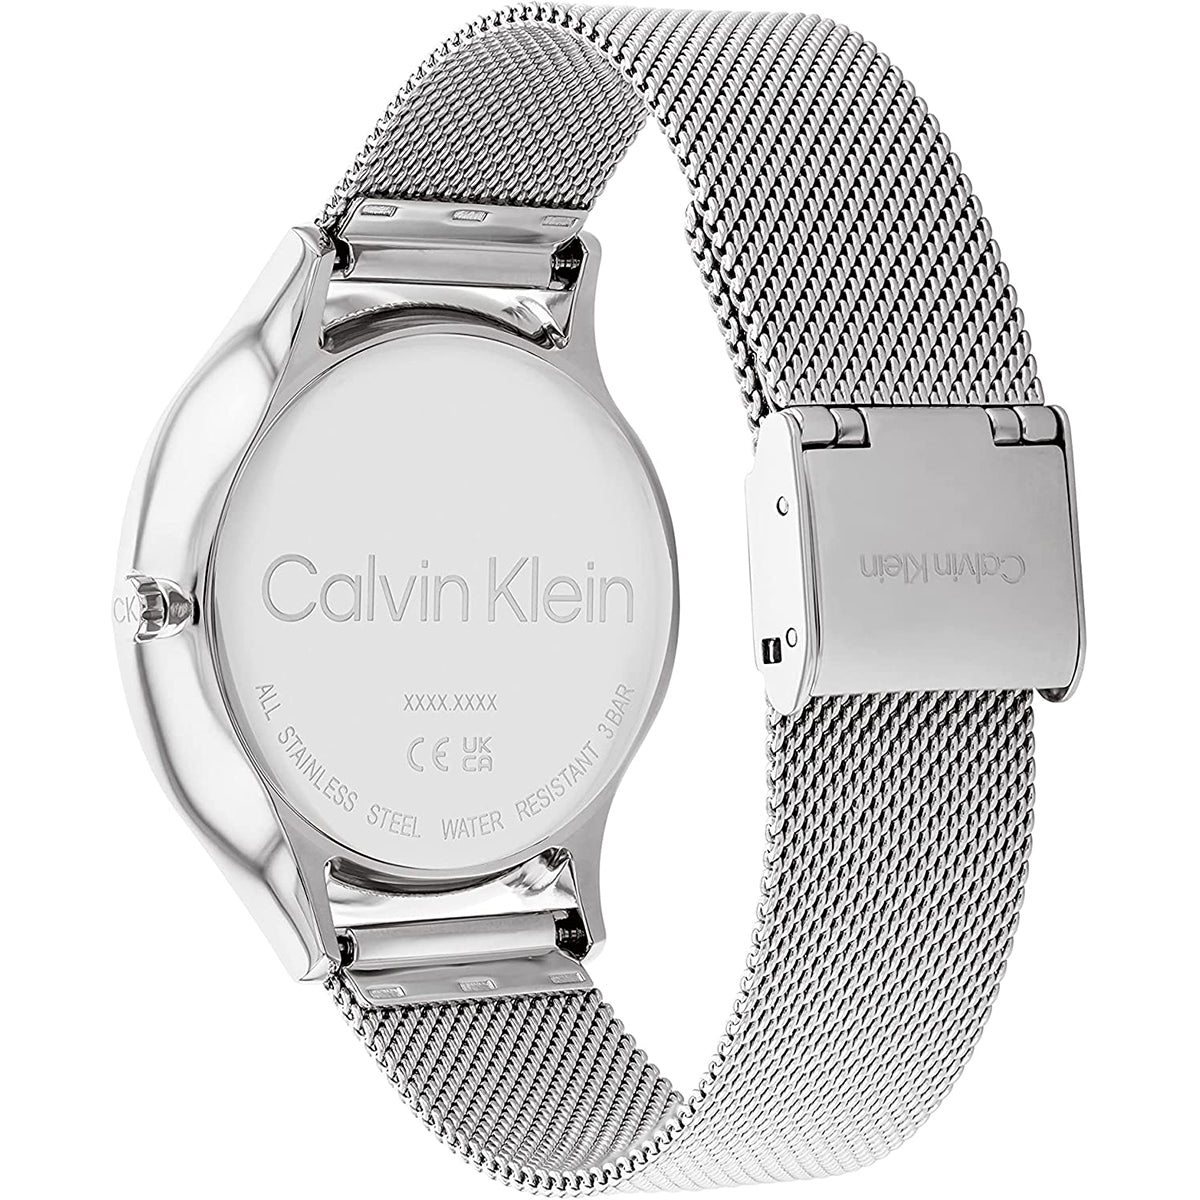 Calvin Klein - Timeless  - 25200104